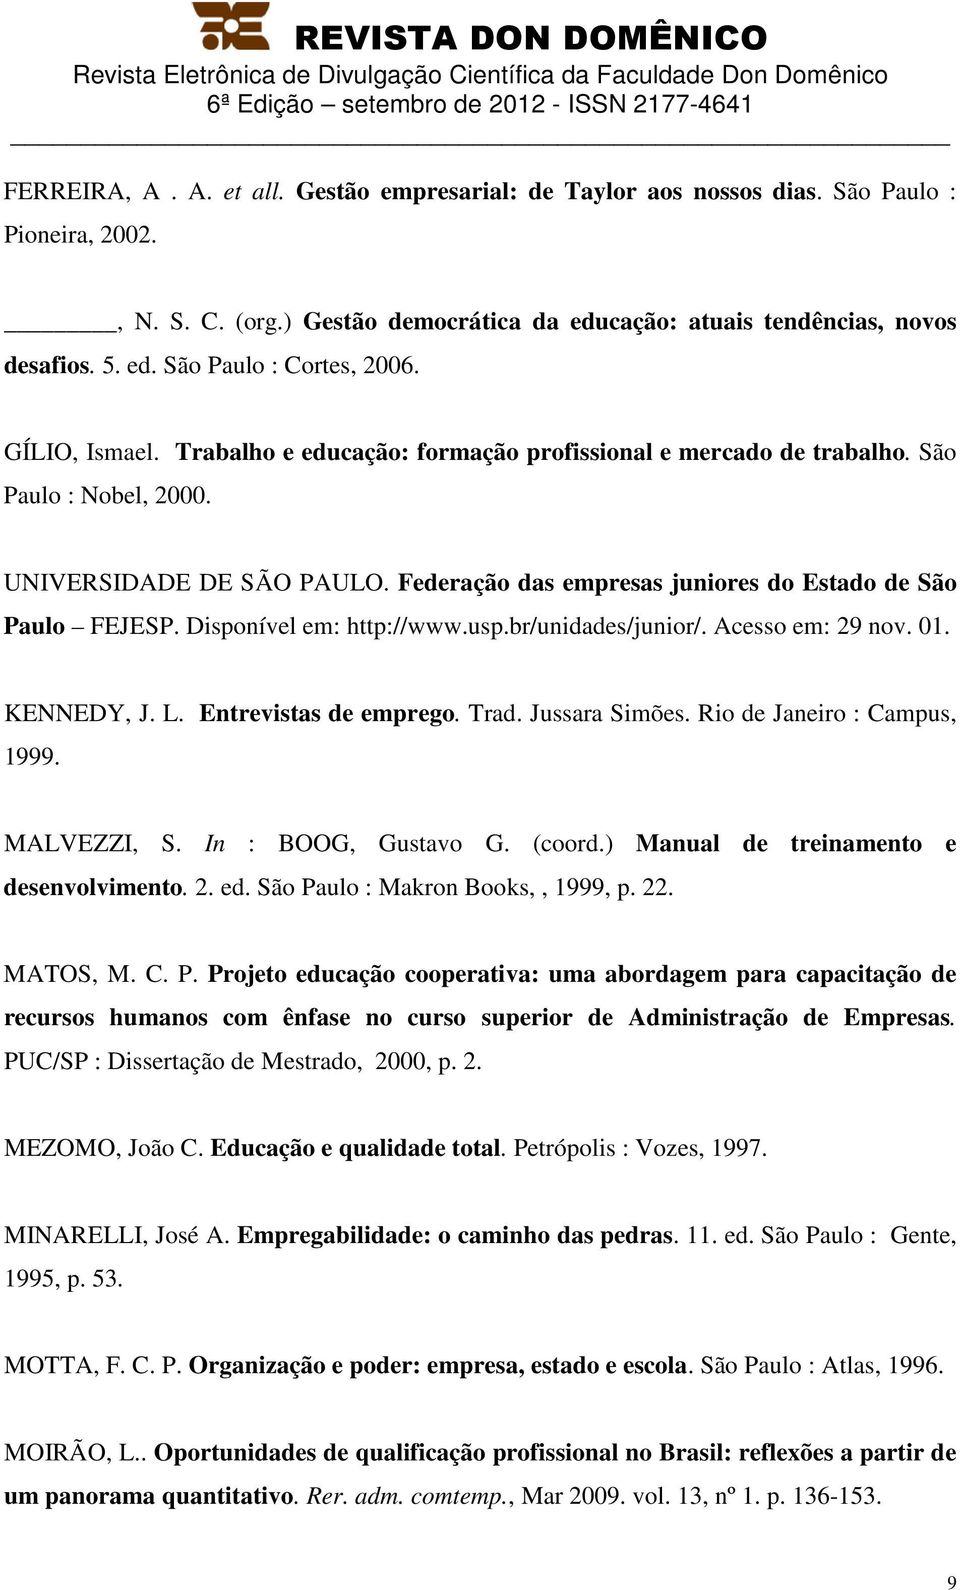 Disponível em: http://www.usp.br/unidades/junior/. Acesso em: 29 nov. 01. KENNEDY, J. L. Entrevistas de emprego. Trad. Jussara Simões. Rio de Janeiro : Campus, 1999. MALVEZZI, S. In : BOOG, Gustavo G.